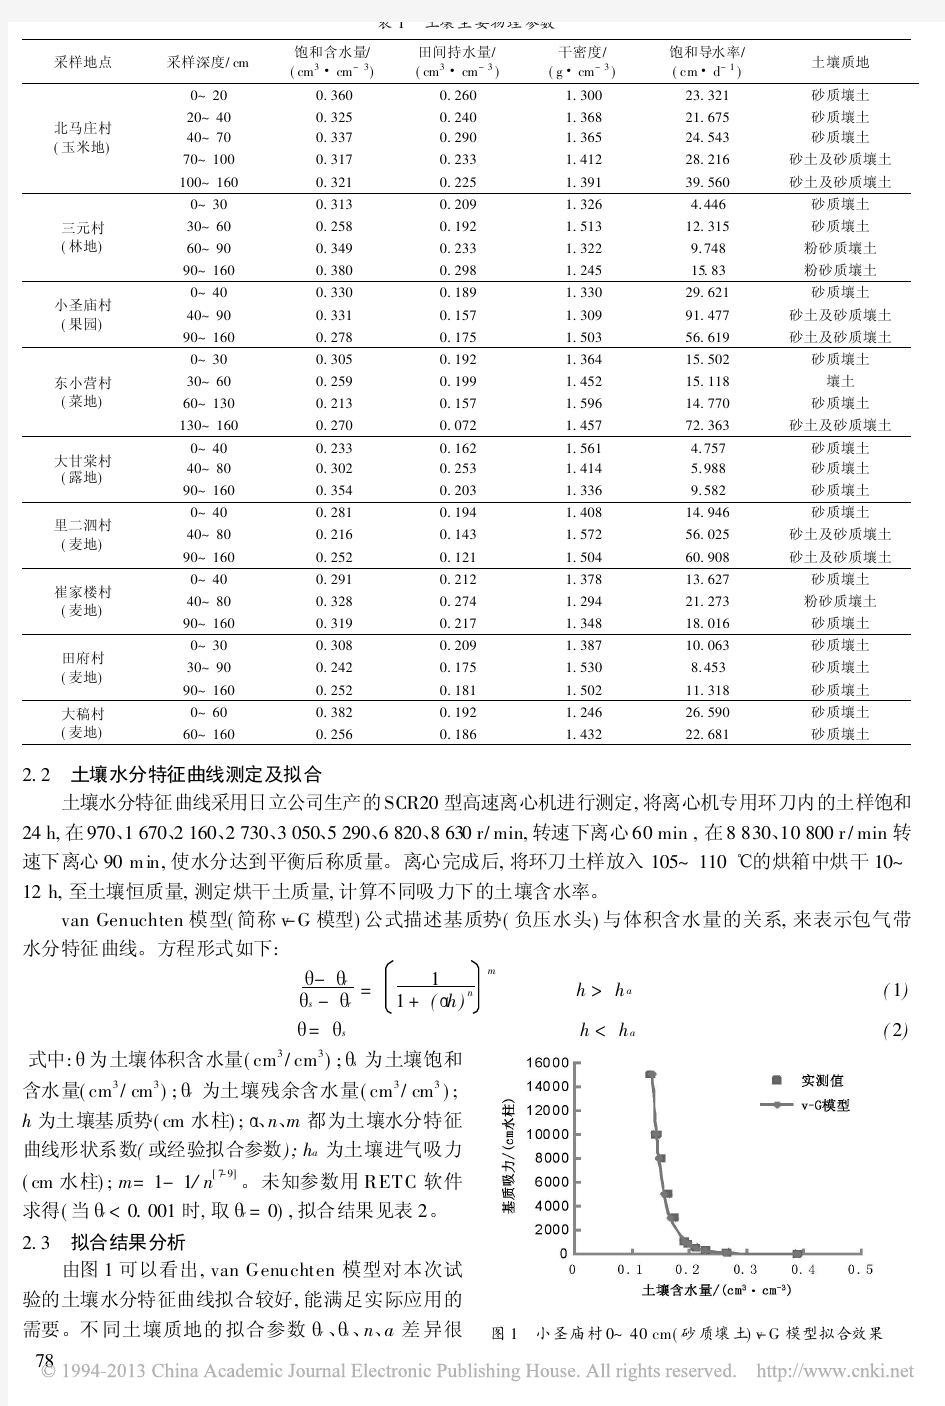 北京通州区典型农田土壤水分特征曲线测定及影响因素分析